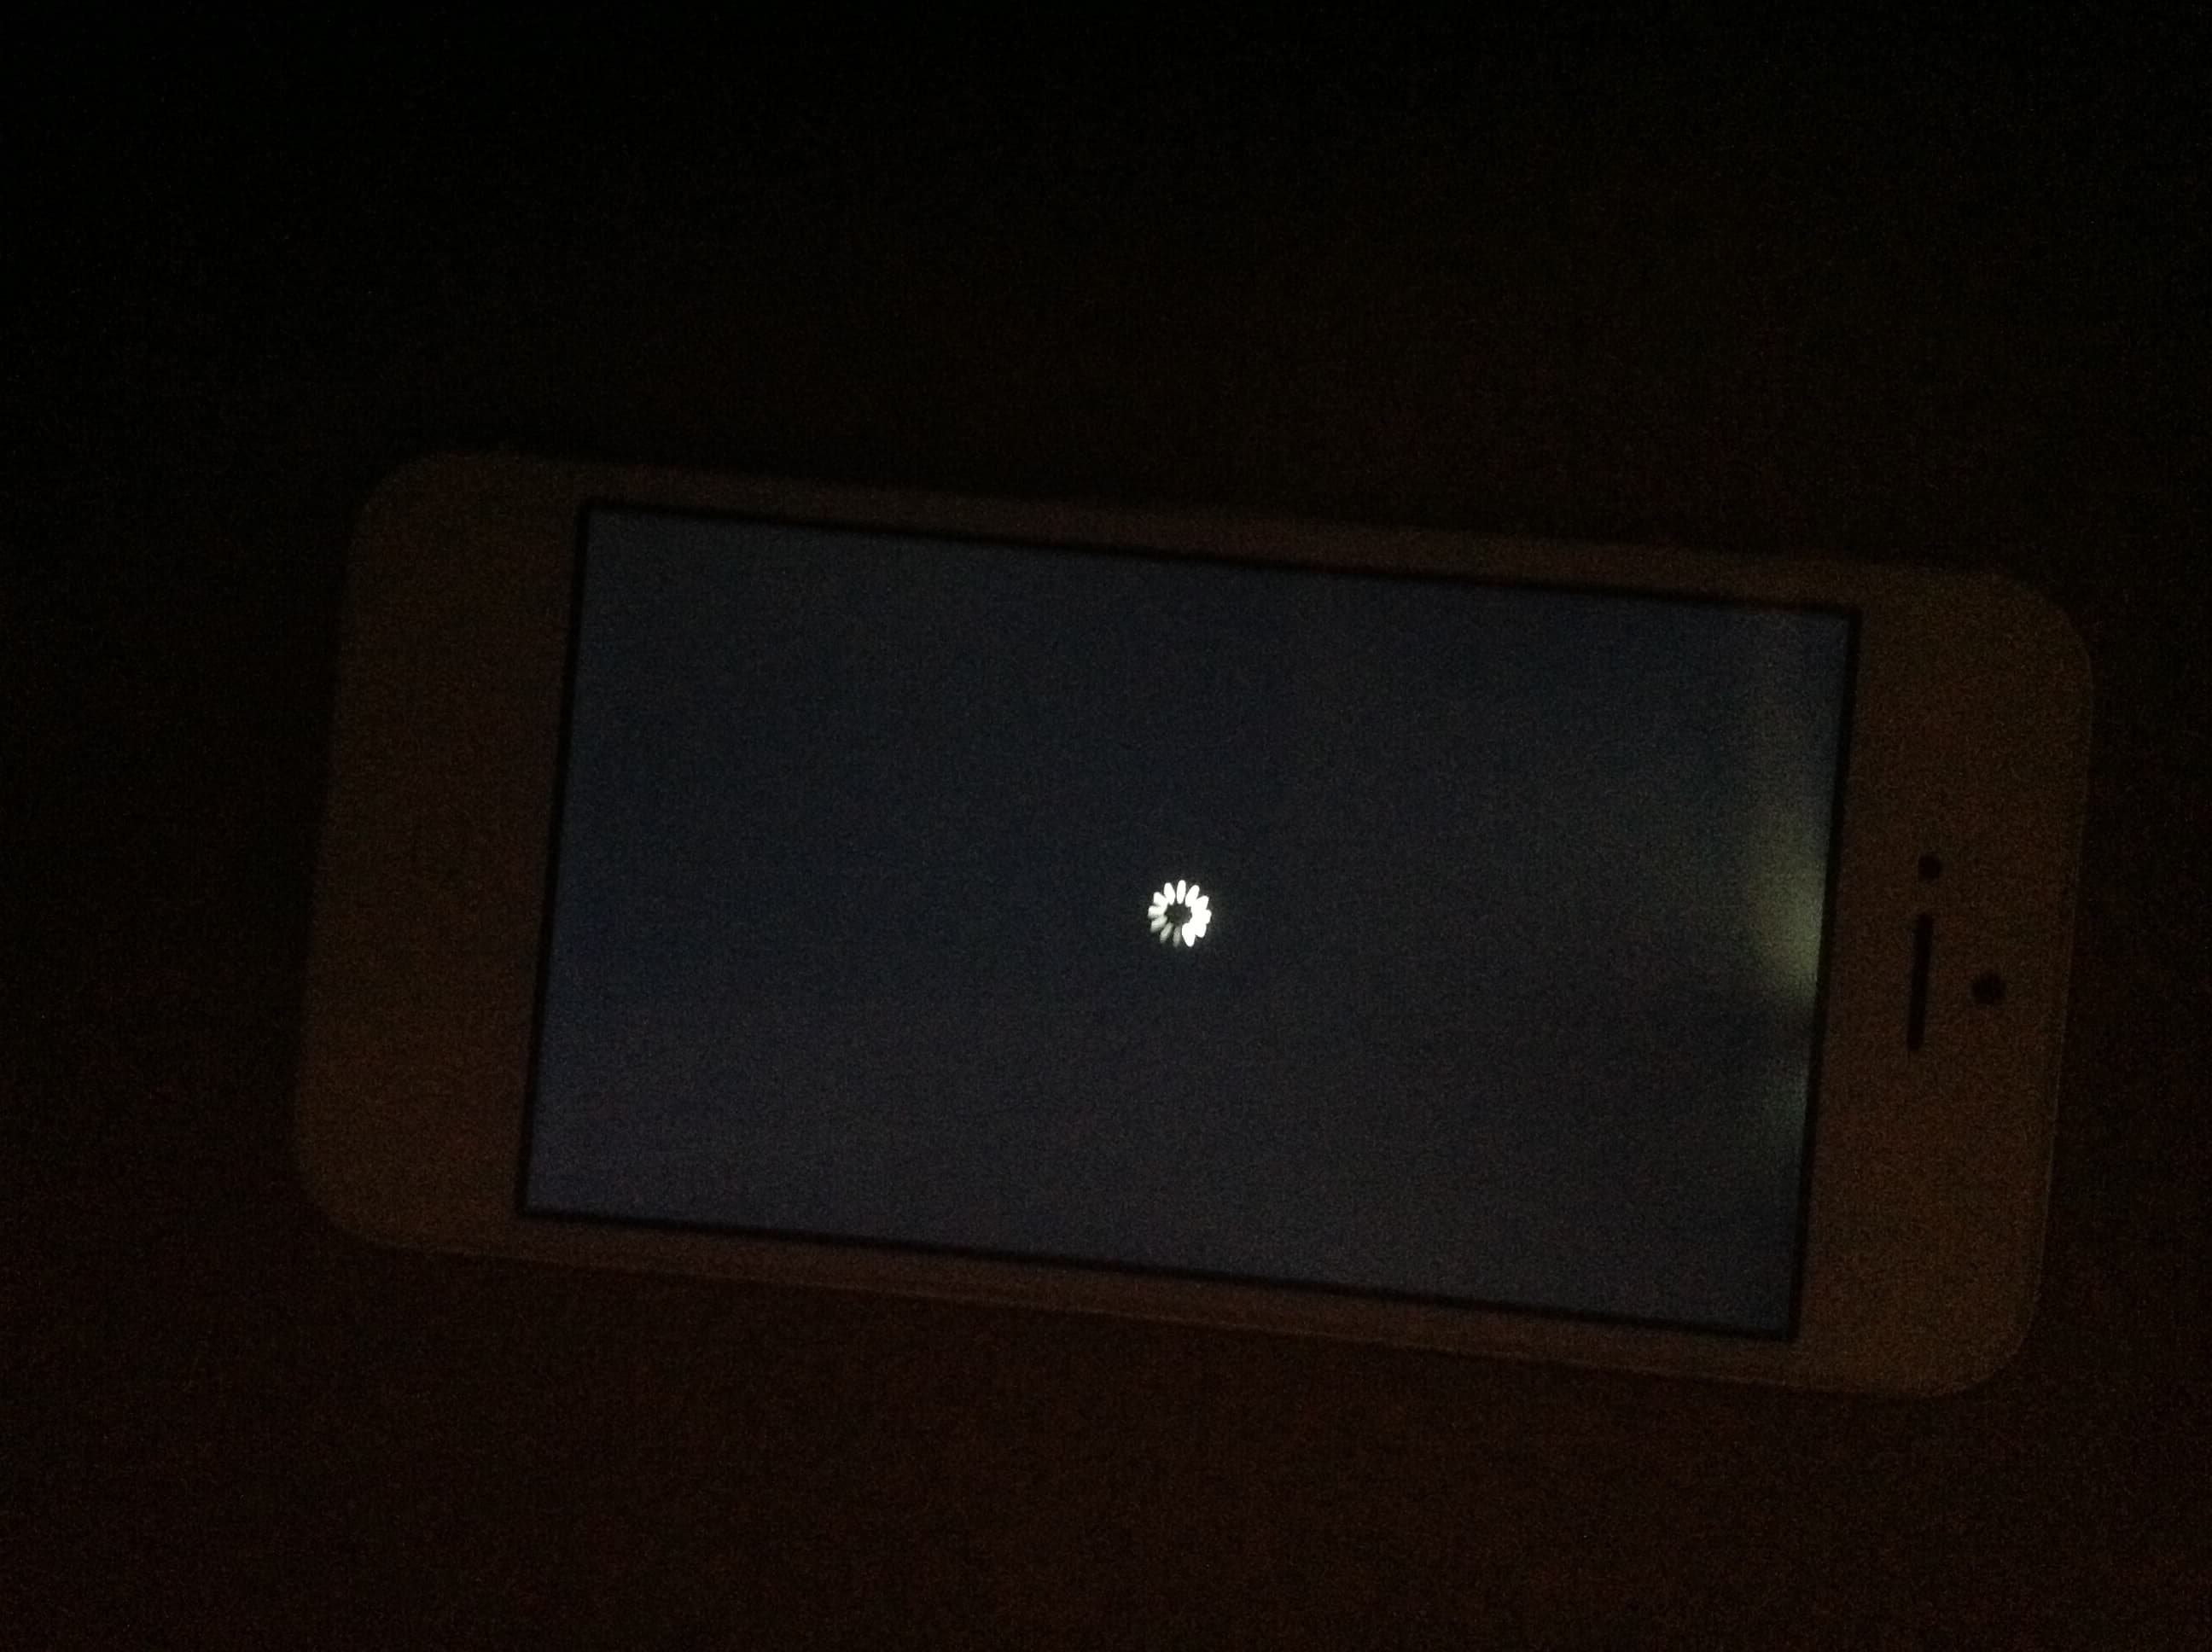 Tiết lộ cách nhận biết màn hình điện thoại iPhone bị hở sáng